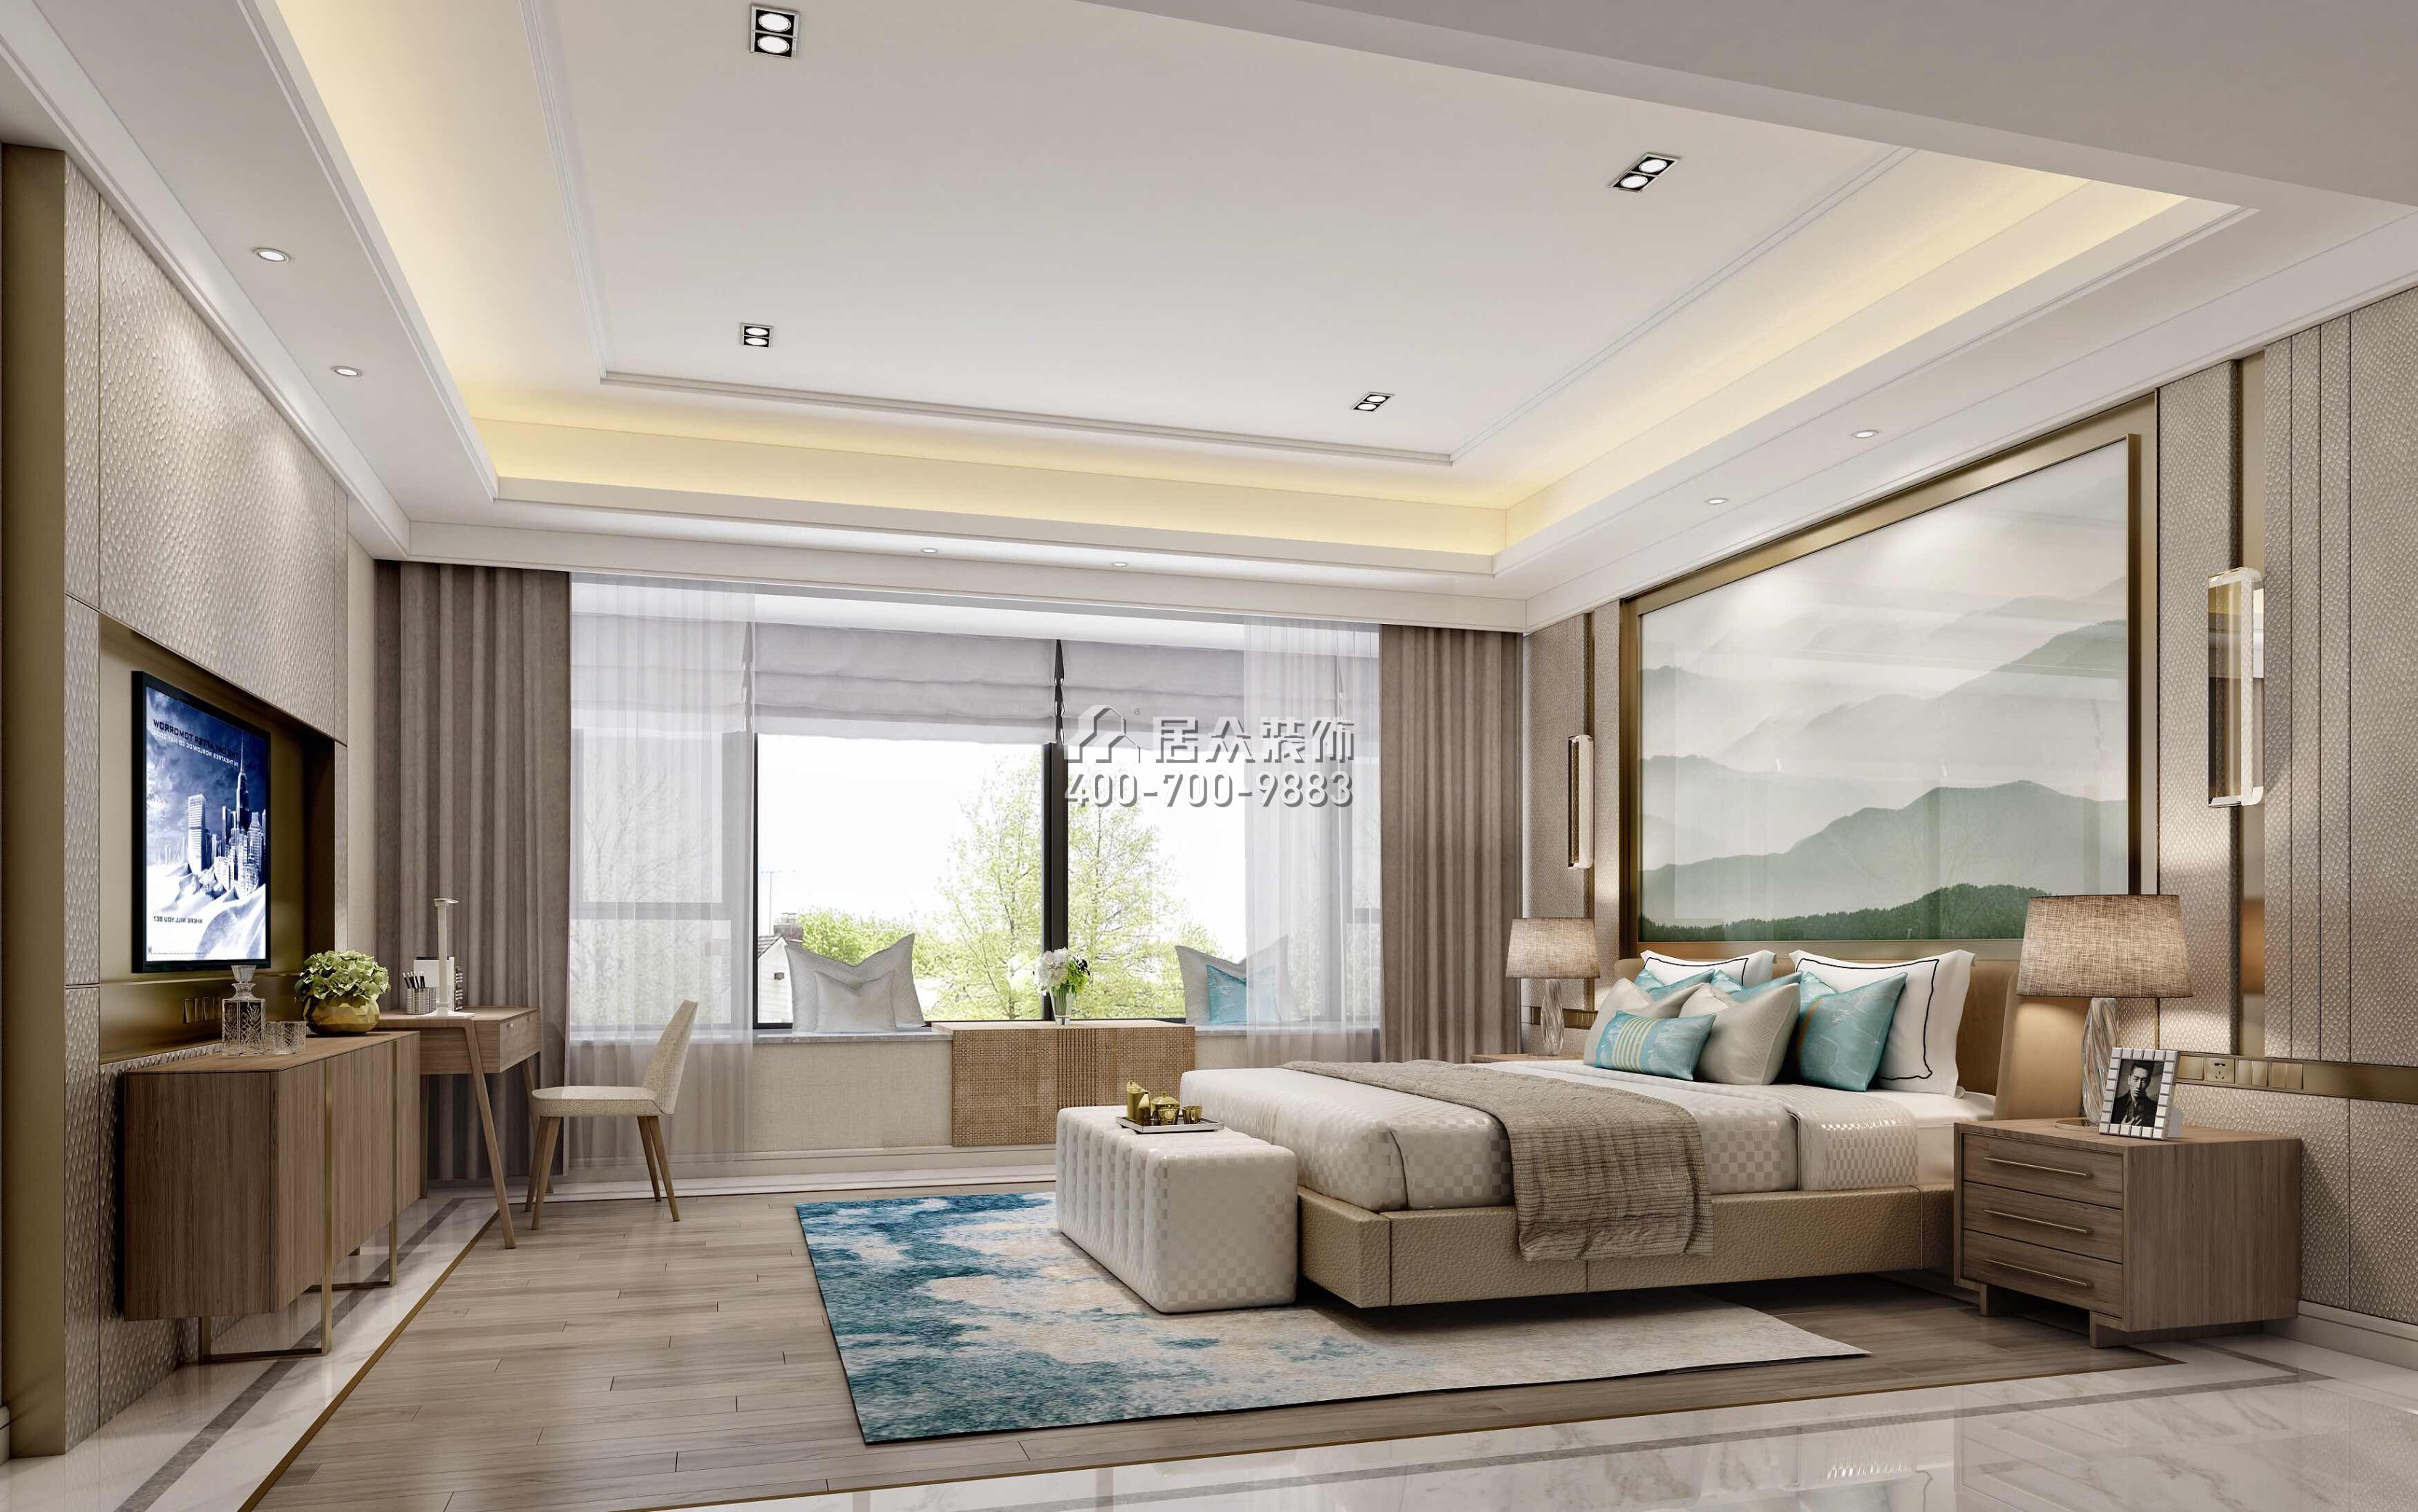 锦绣山河三期350平方米混搭风格平层户型卧室装修效果图